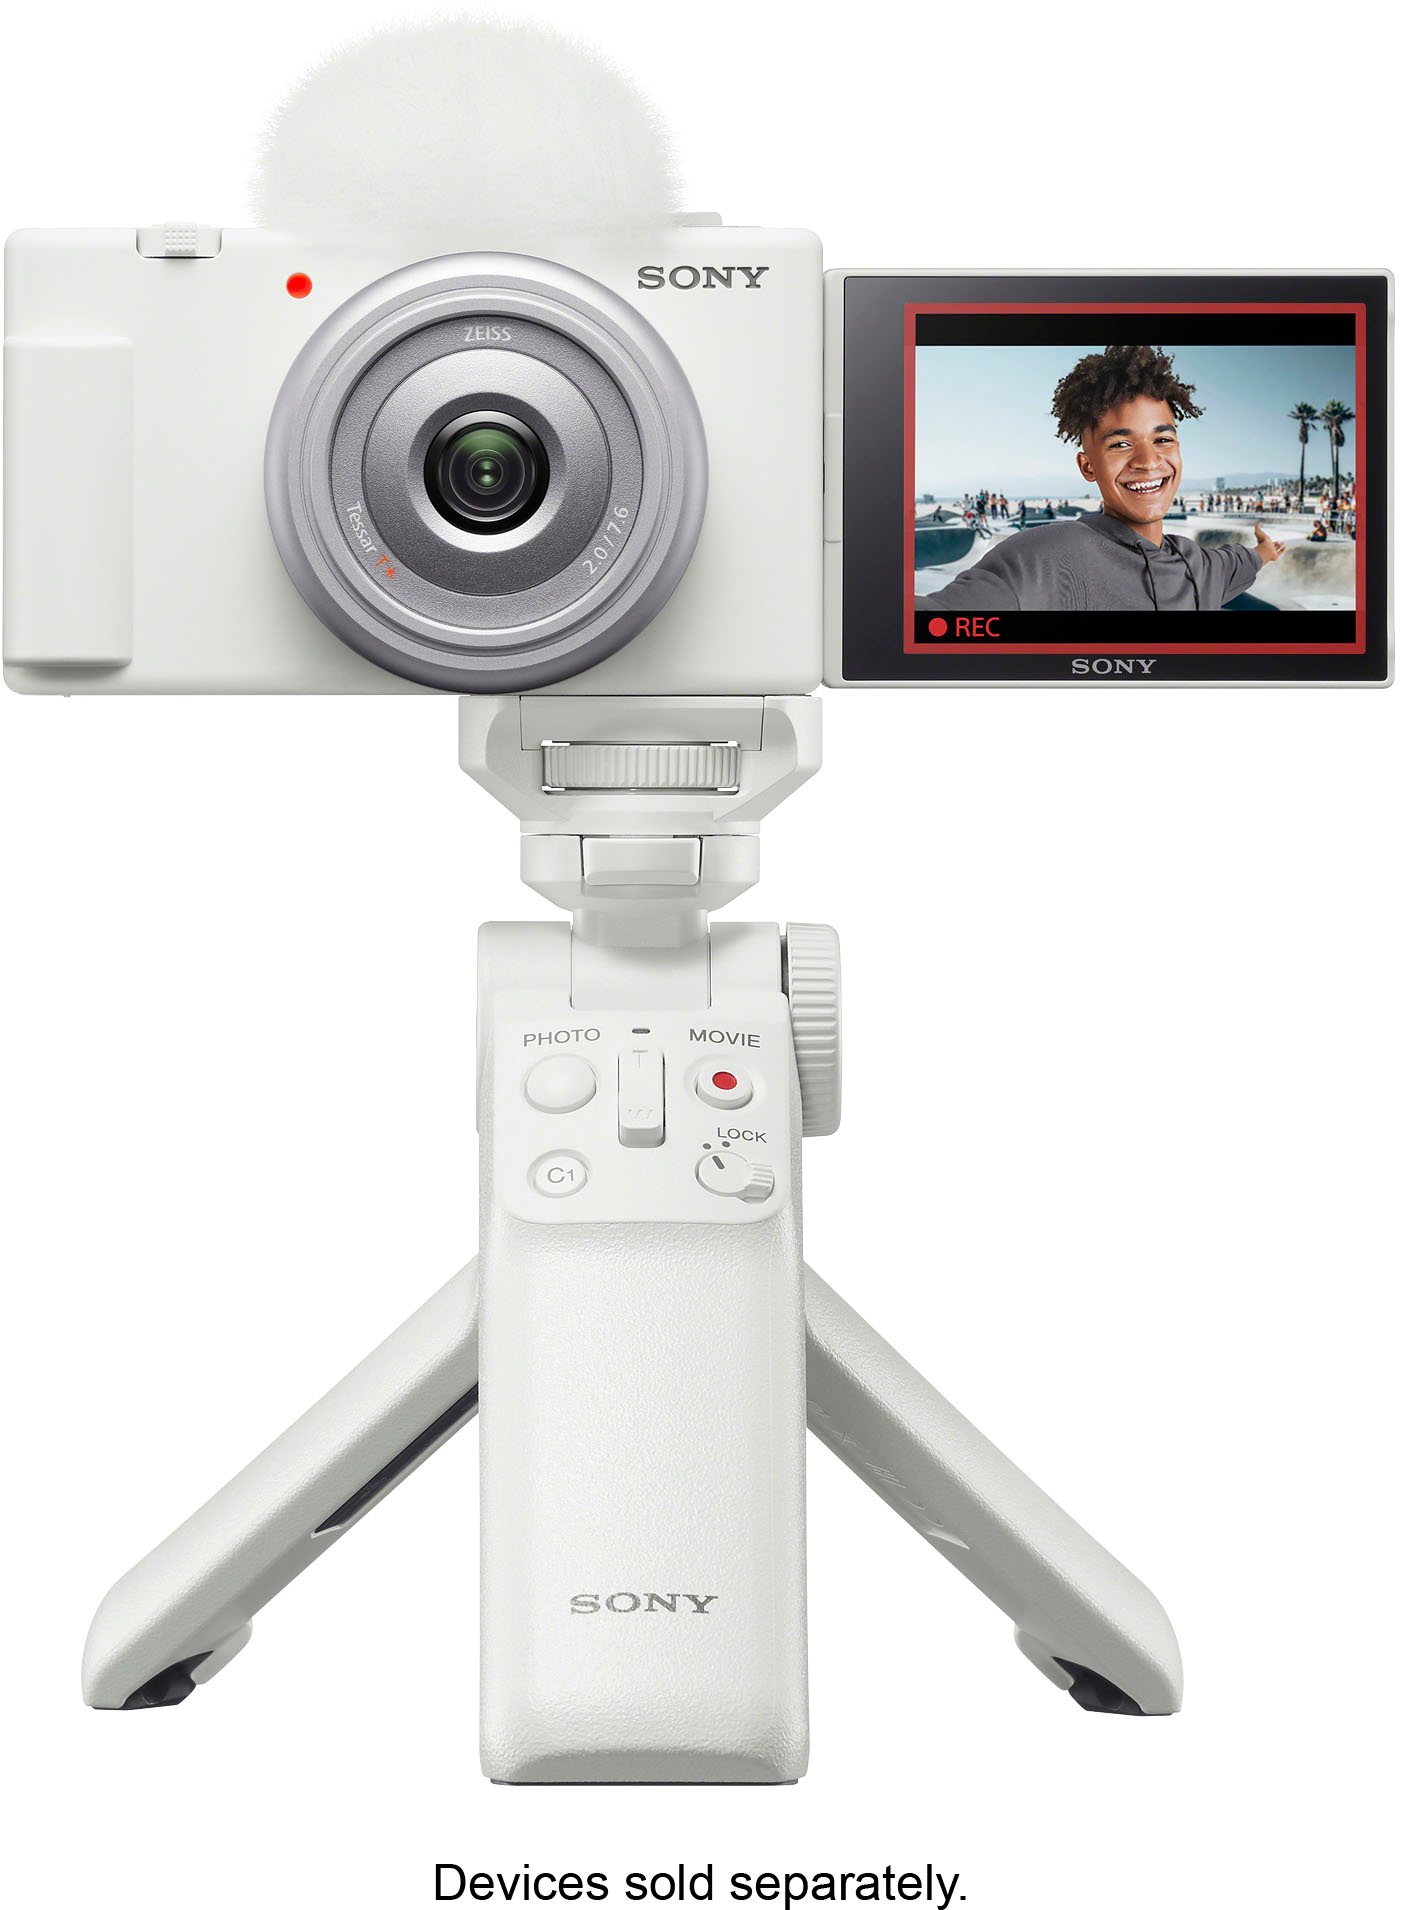 Sony ZV-1 Digital Camera (White)